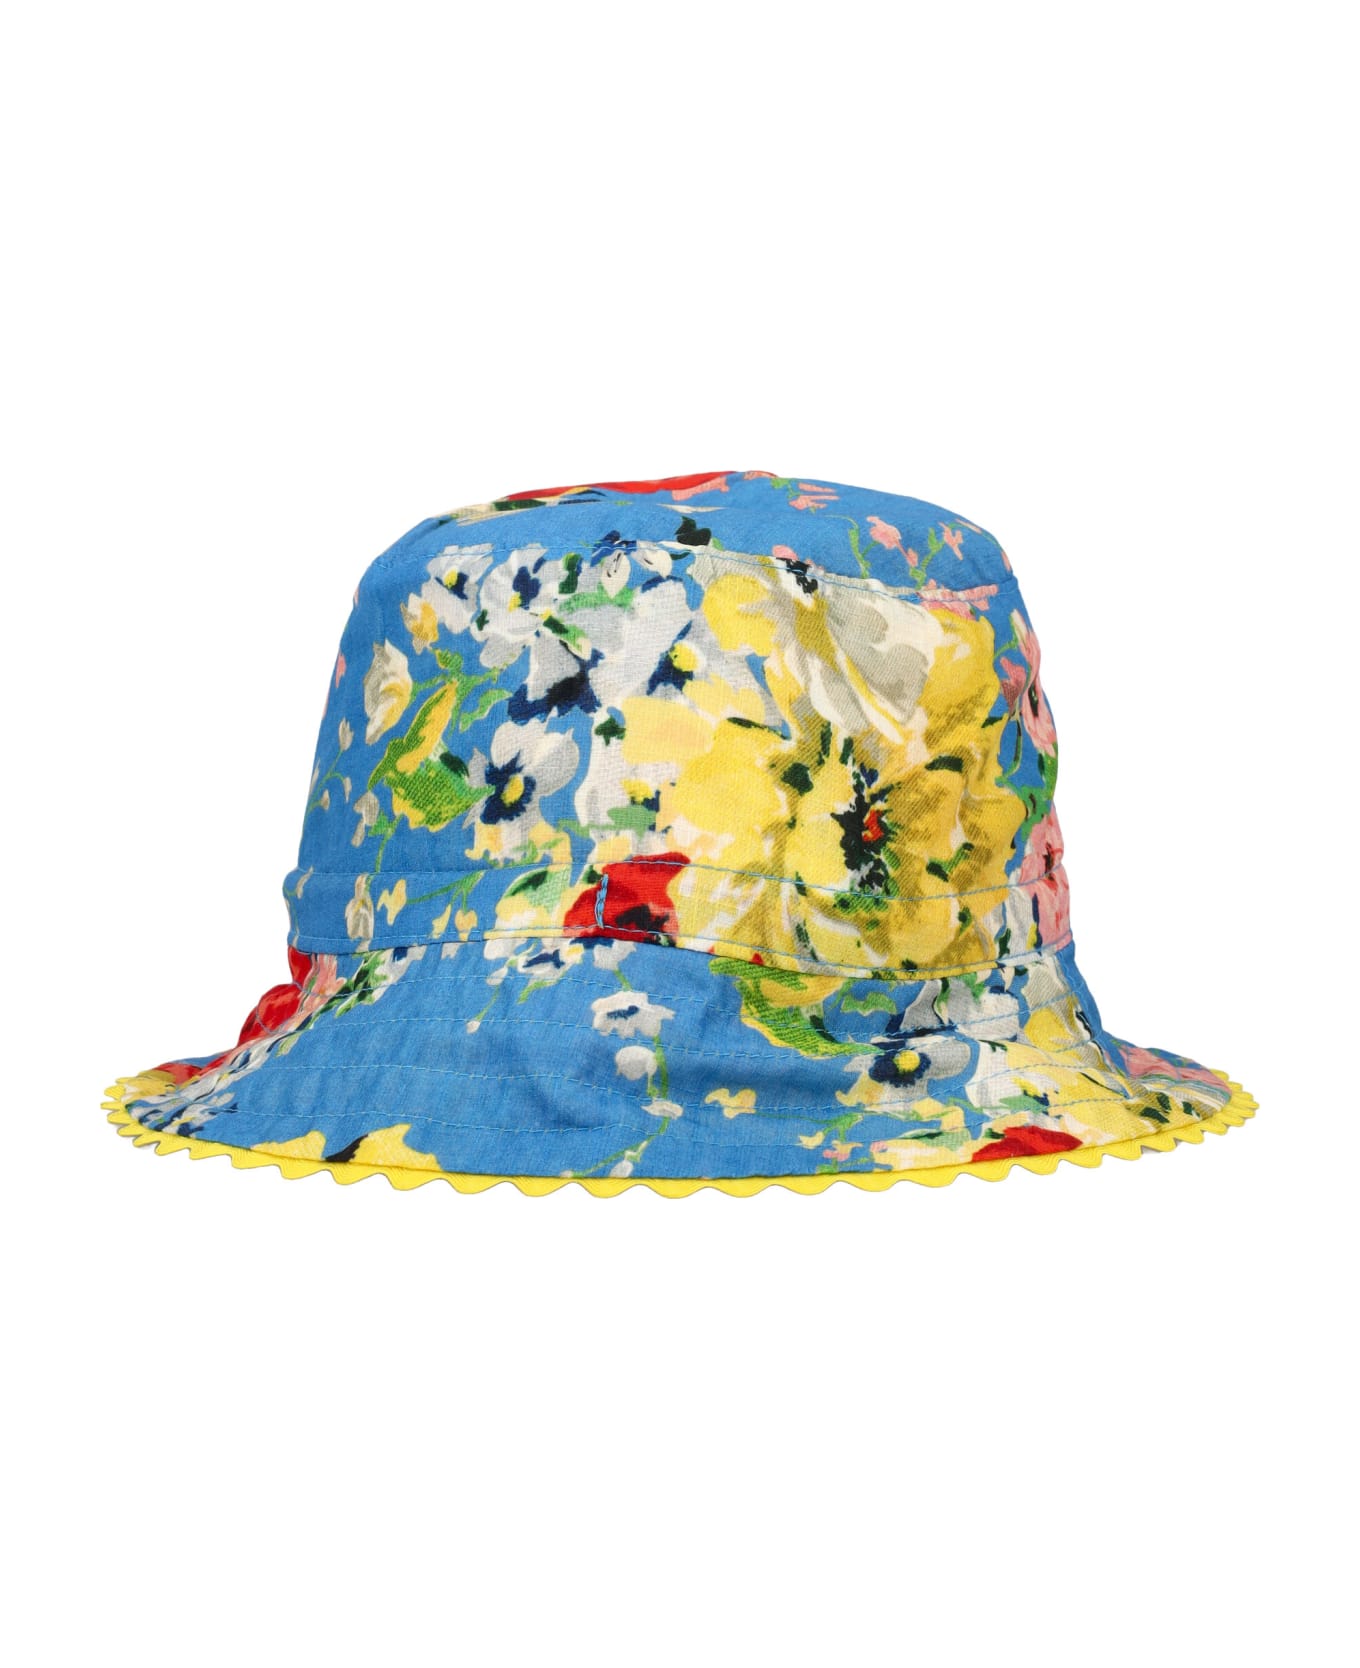 Zimmermann Bucket Hat - YELLOW FLORAL